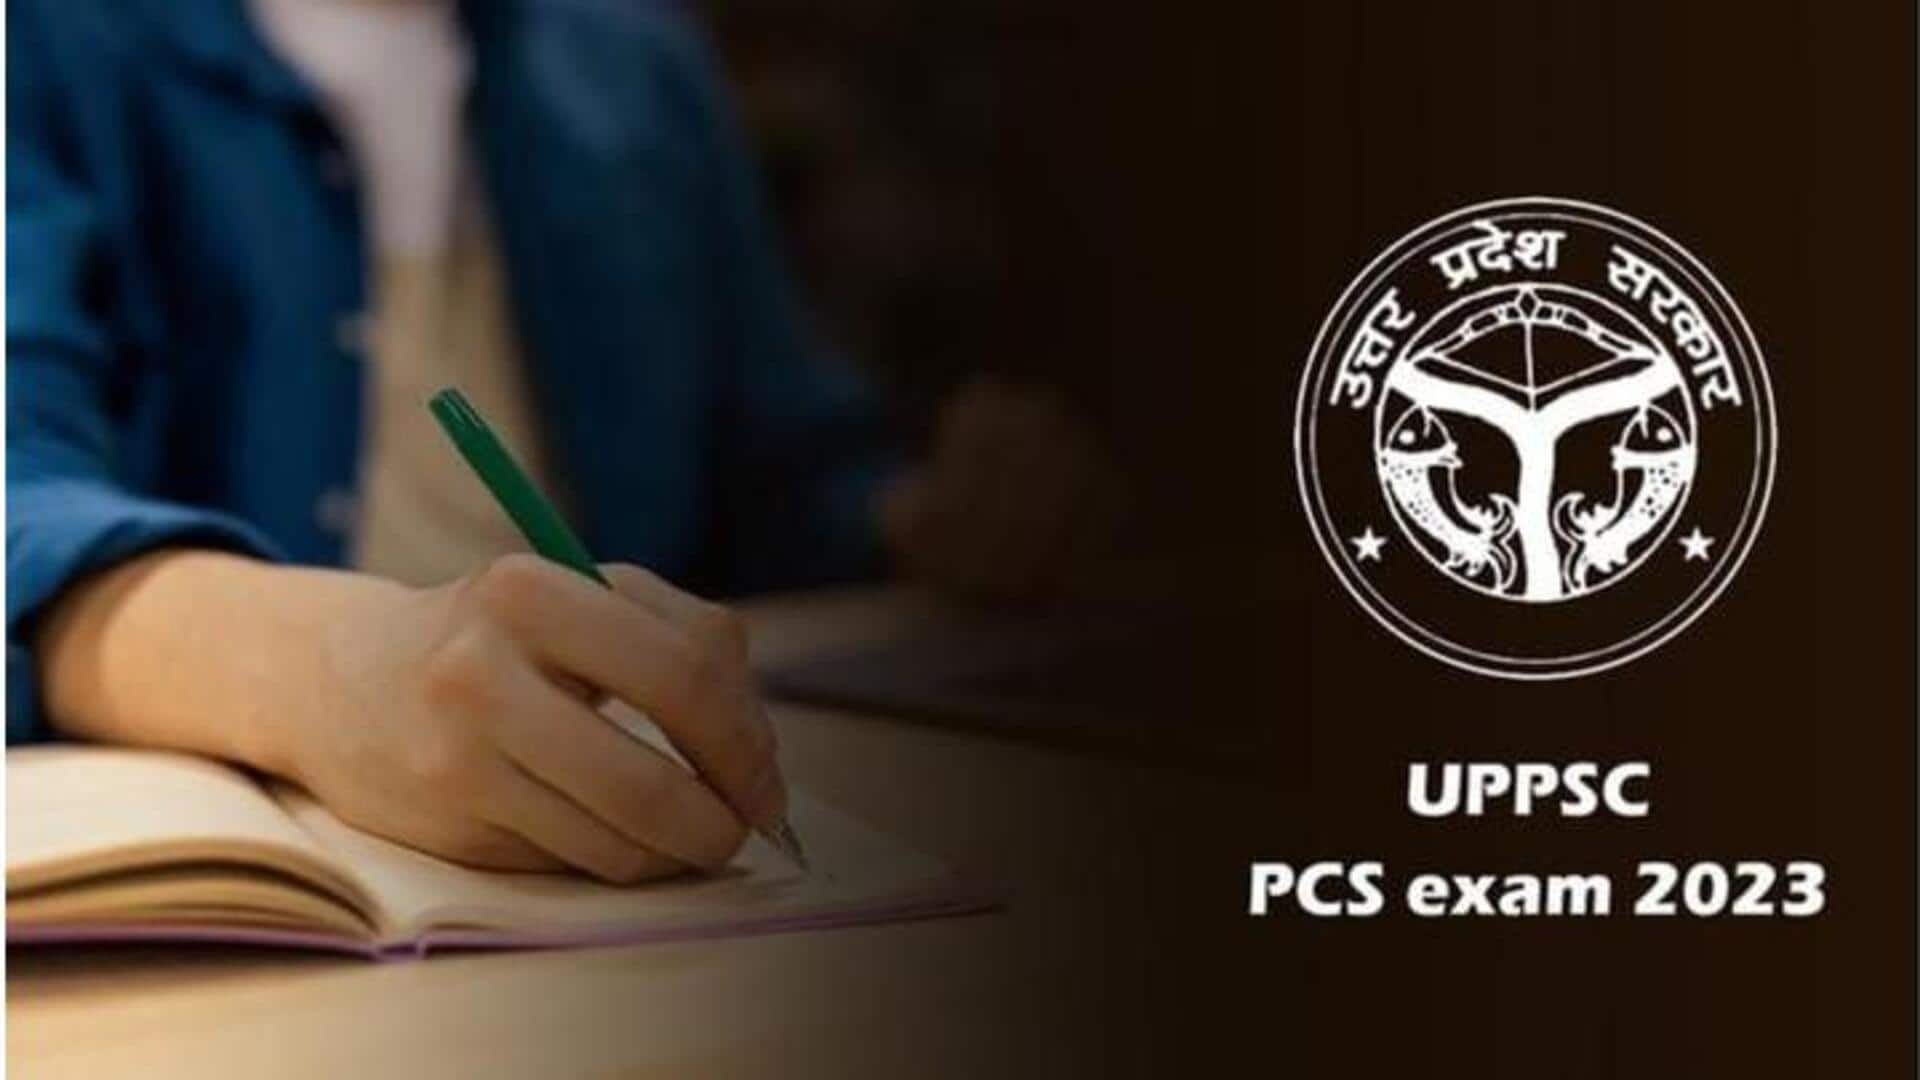 UPPSC मुख्य परीक्षा की तारीख में बदलाव, अब इस तारीख से शुरू होगी परीक्षा